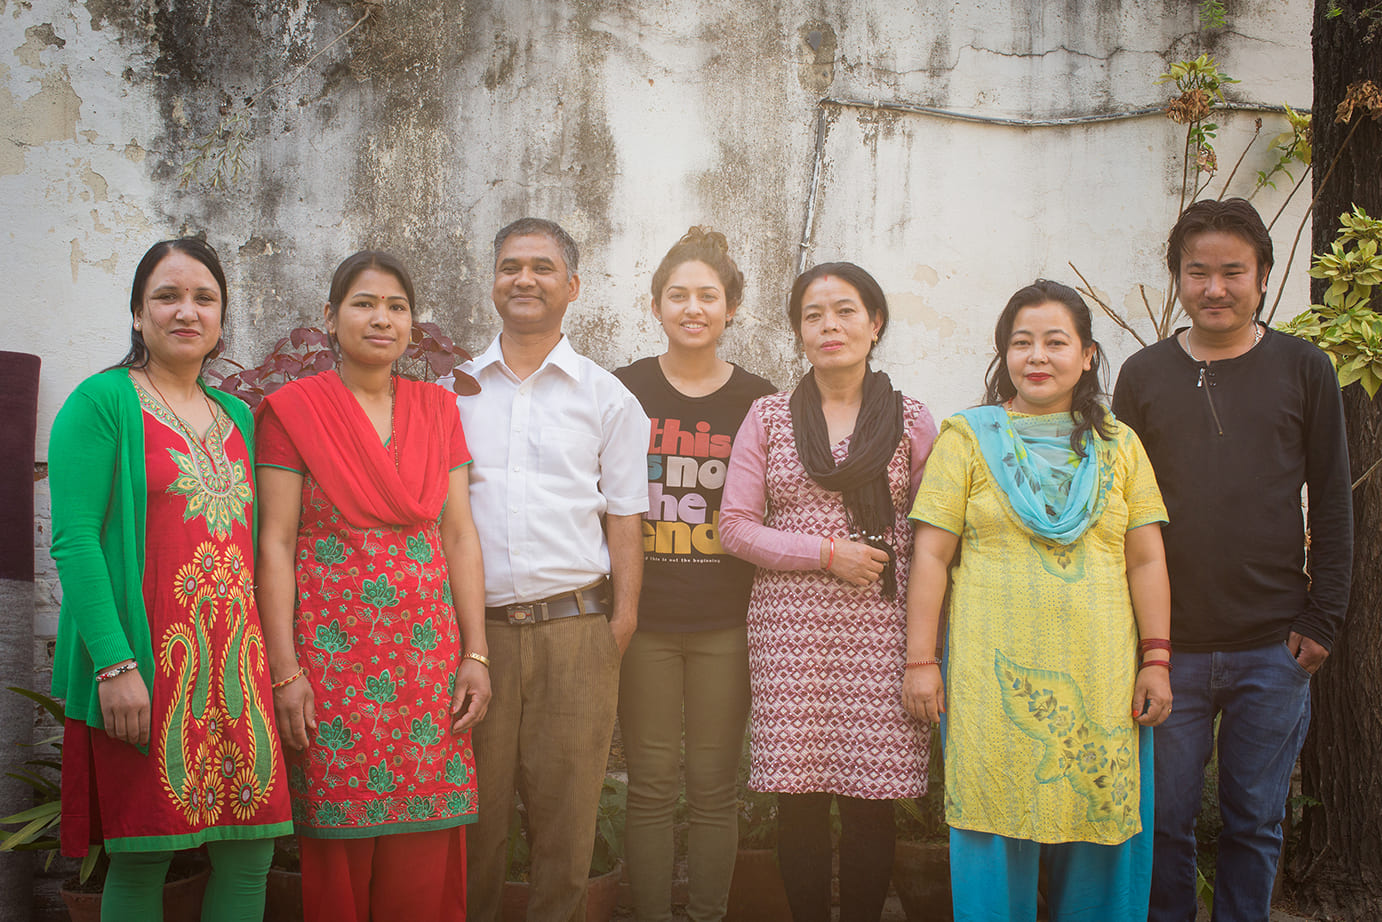 Équipe népalaise en charge de la production au Népal